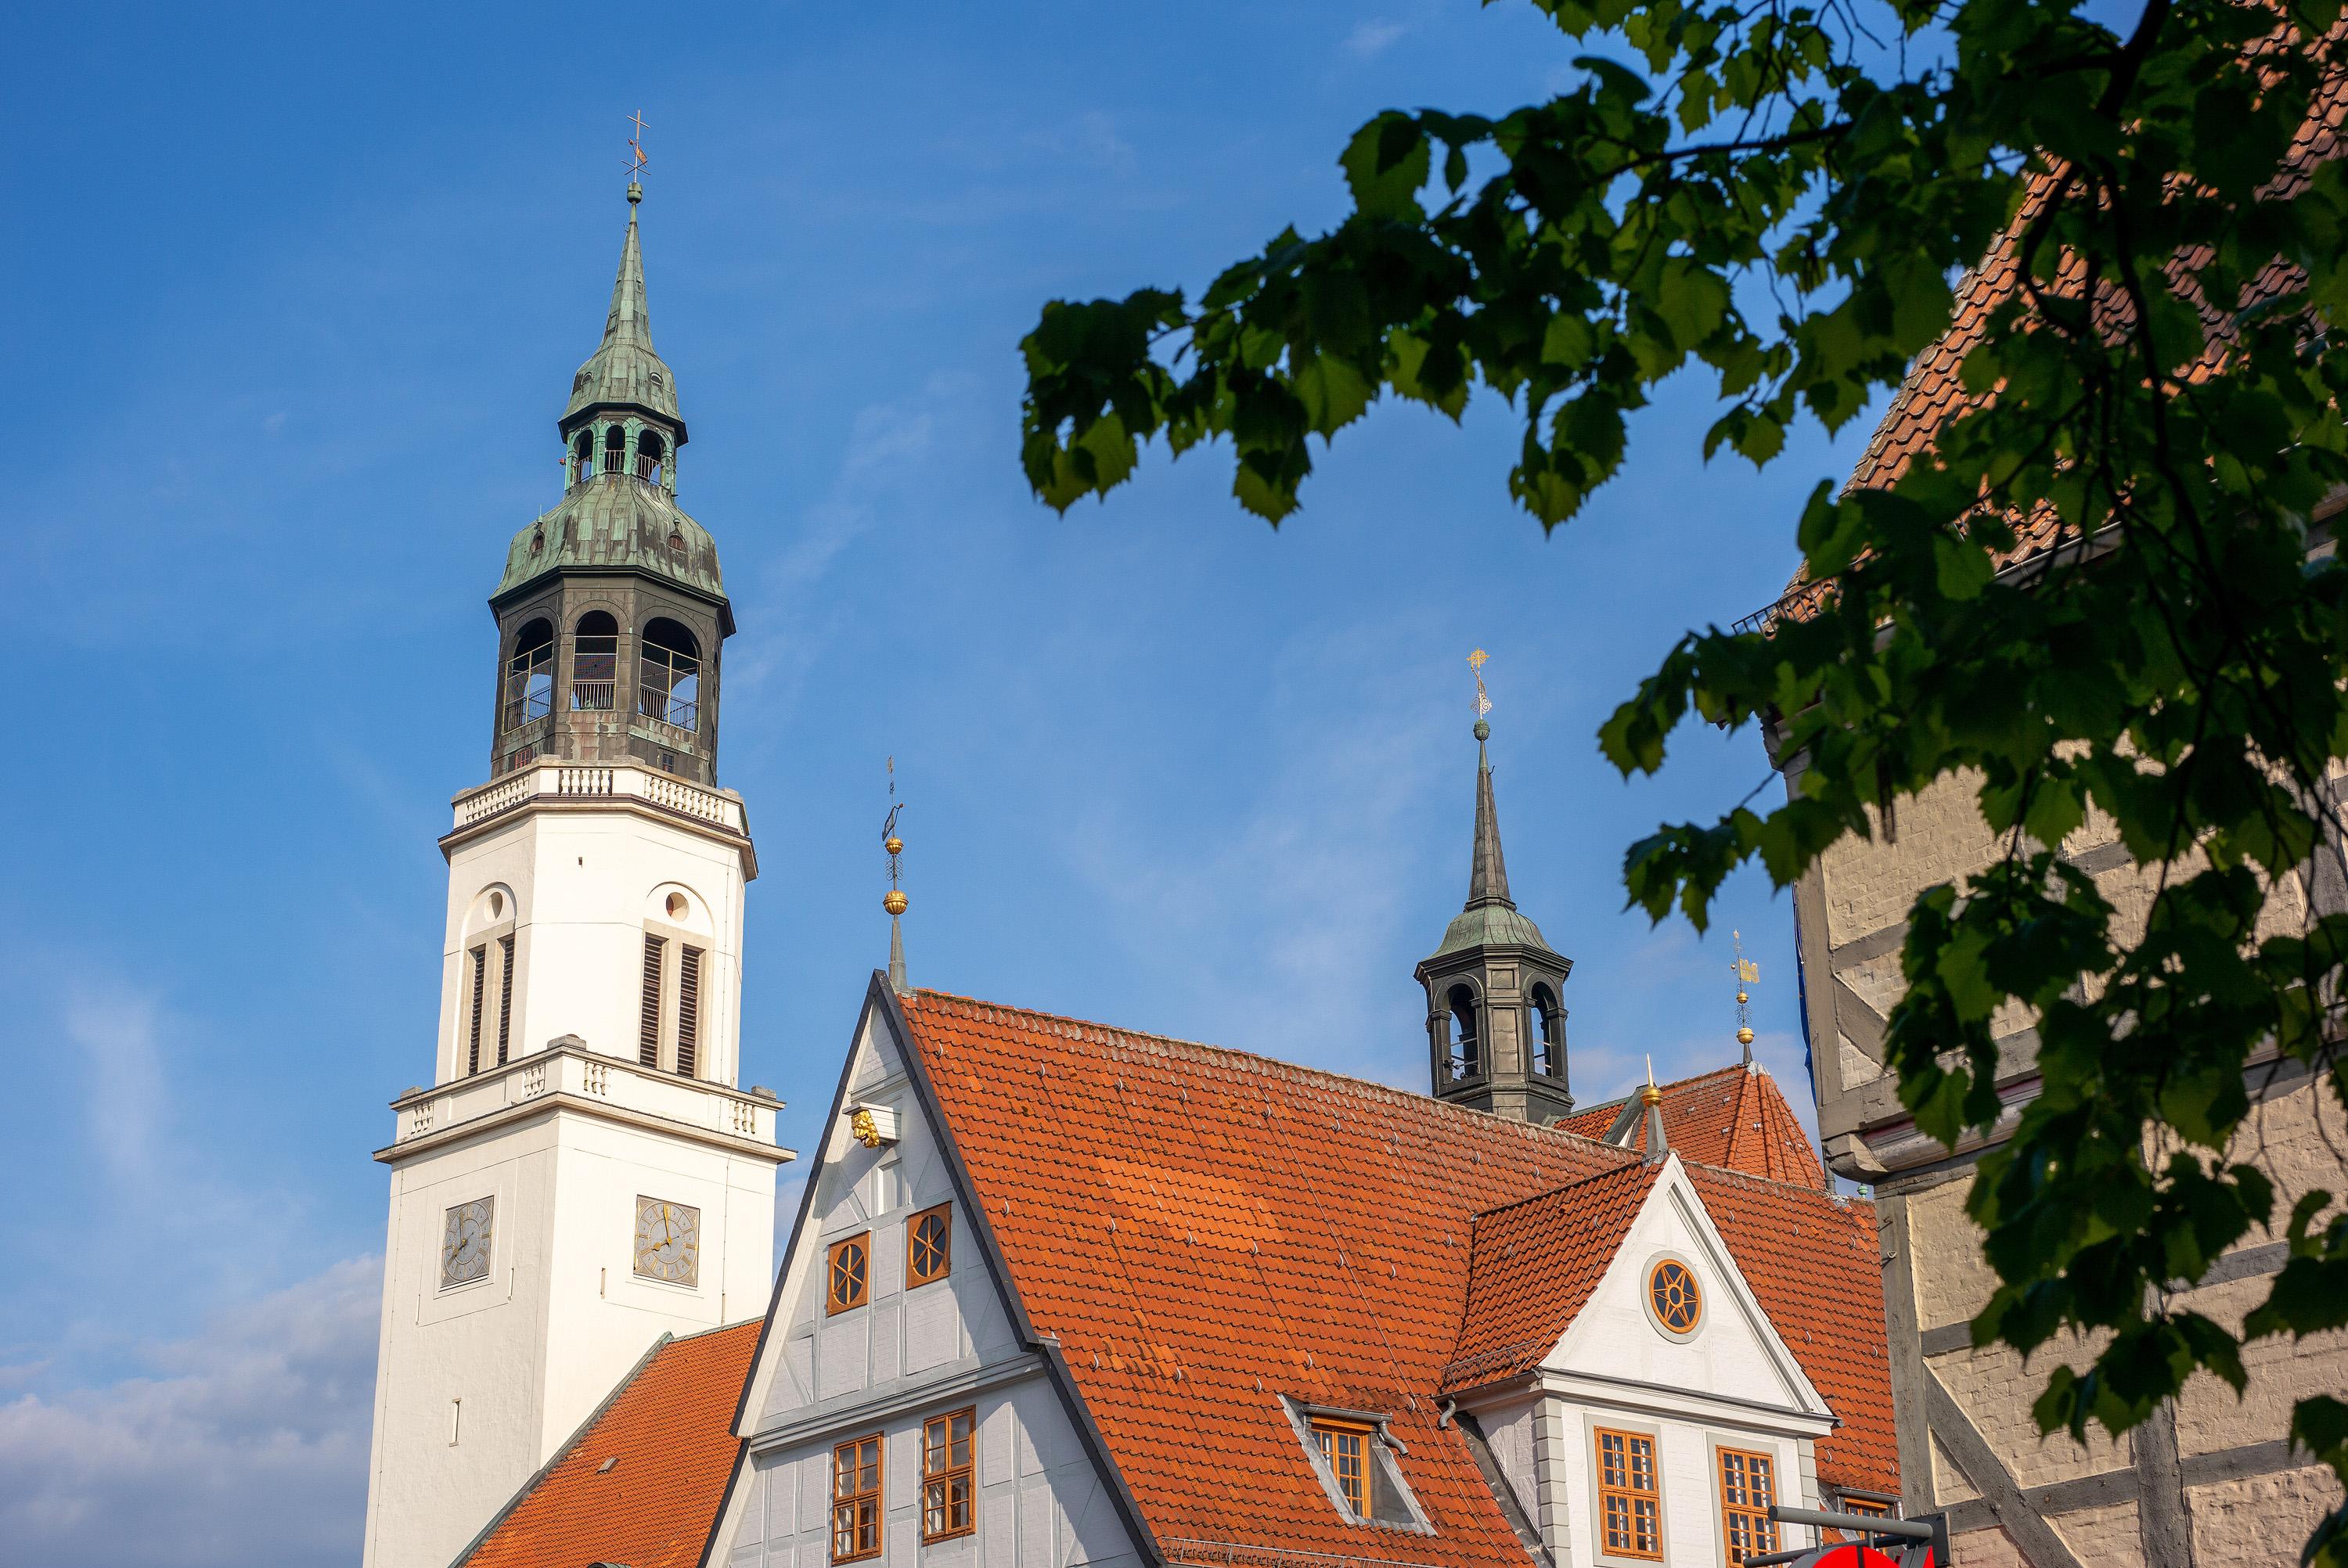 Kirchturm und Altes Rathaus in der Celler Innenstadt